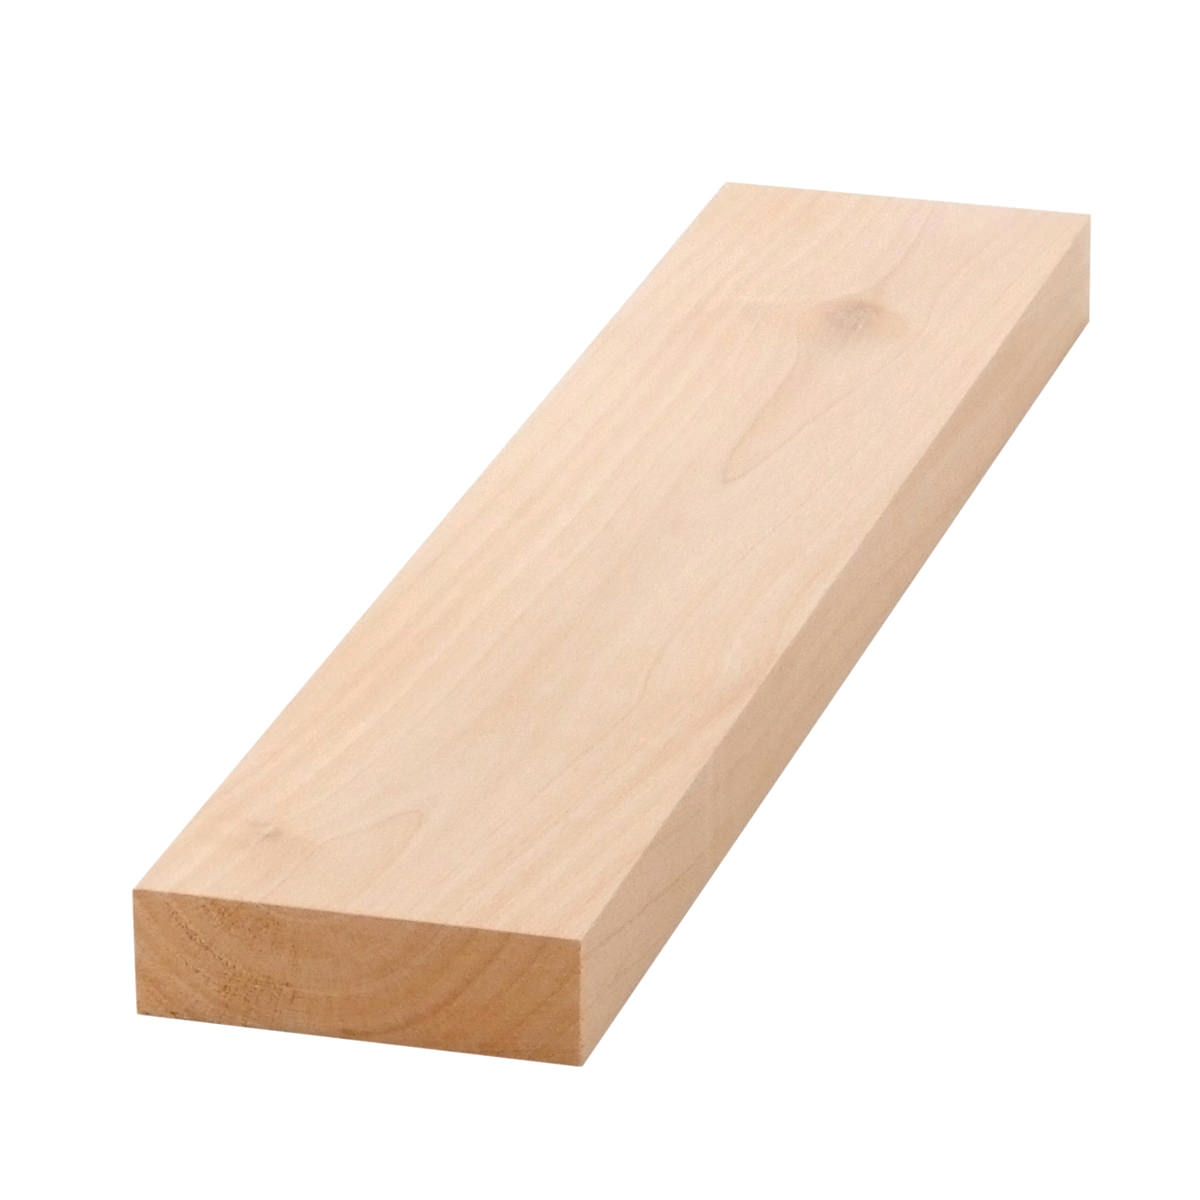 5/4x4 (1" x 31/2") Red Oak S4S Lumber, Boards, & Flat